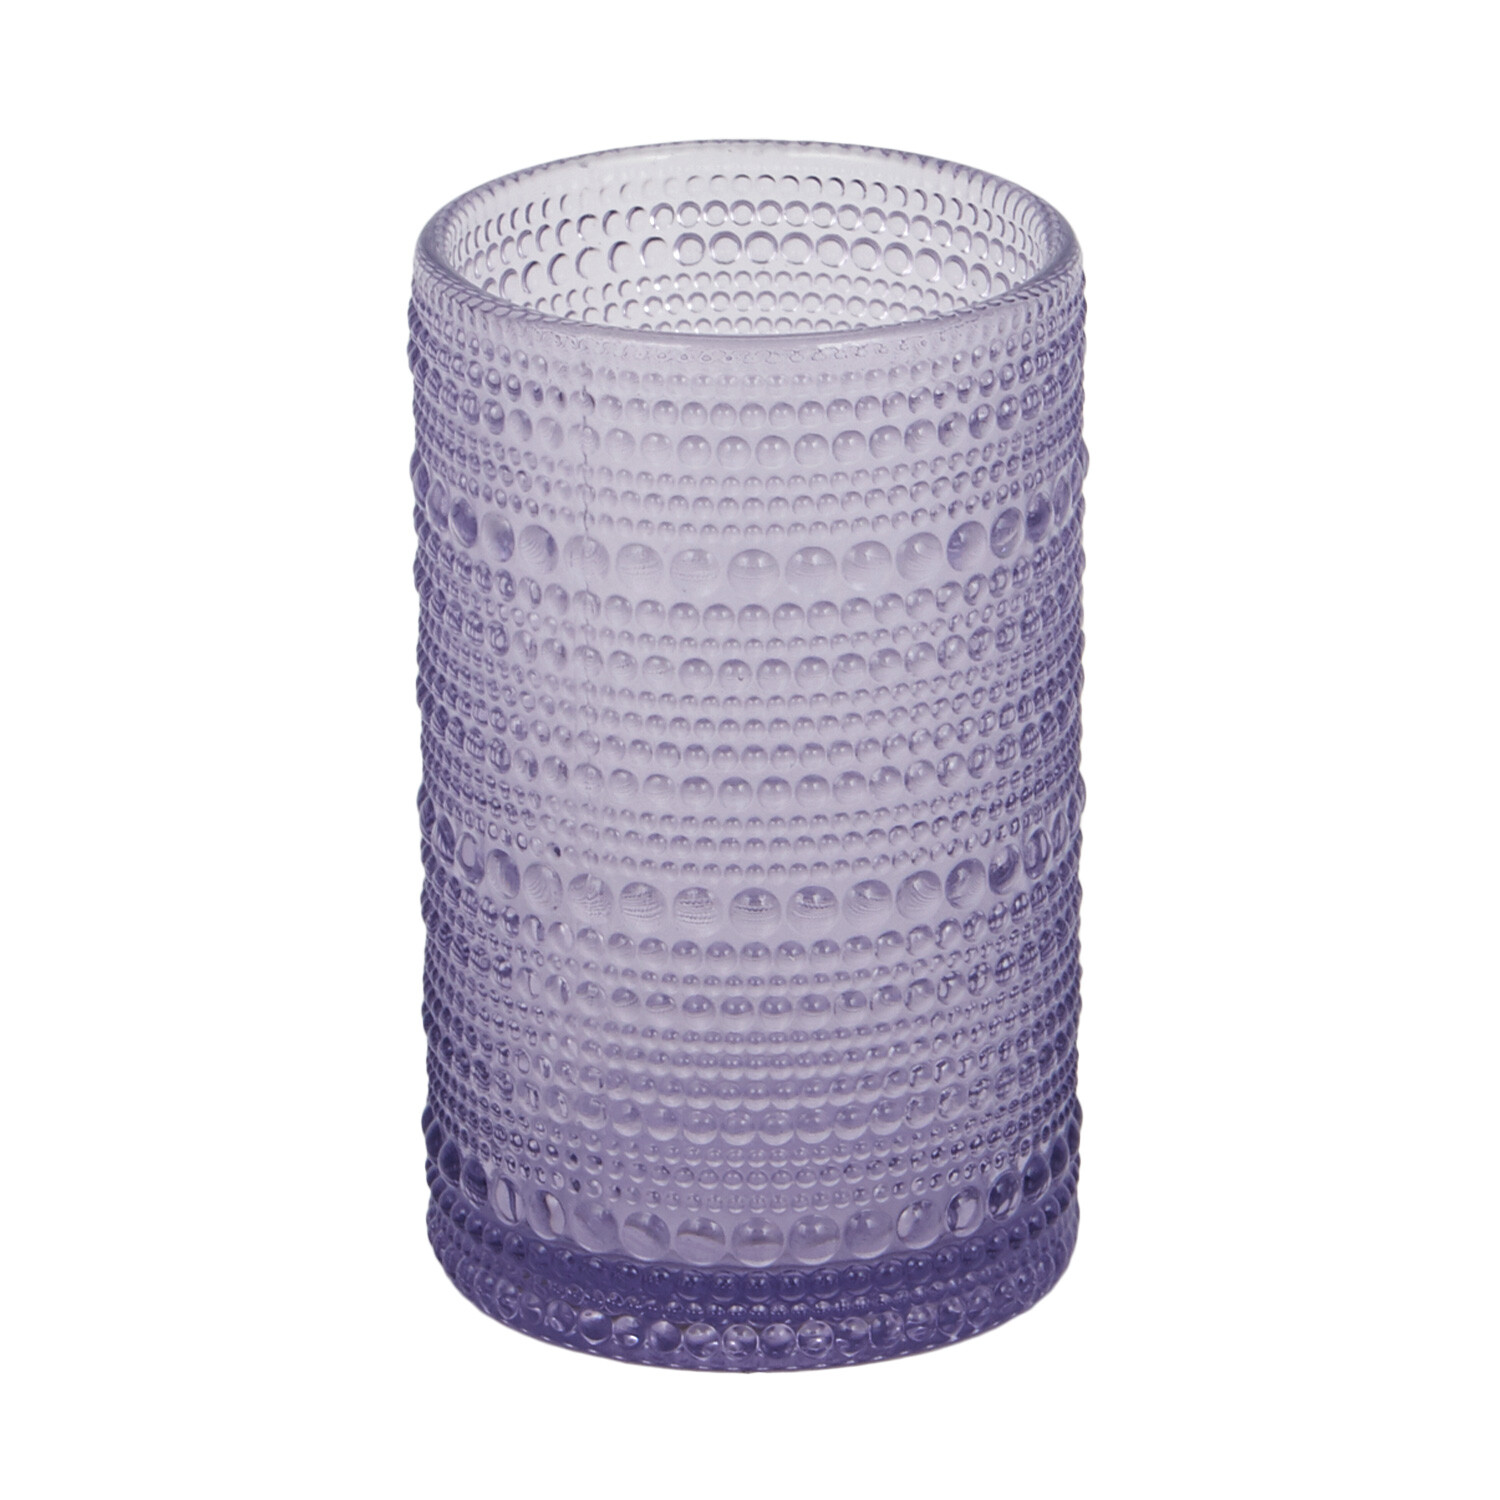 Safi Highball Glass - Purple Image 1